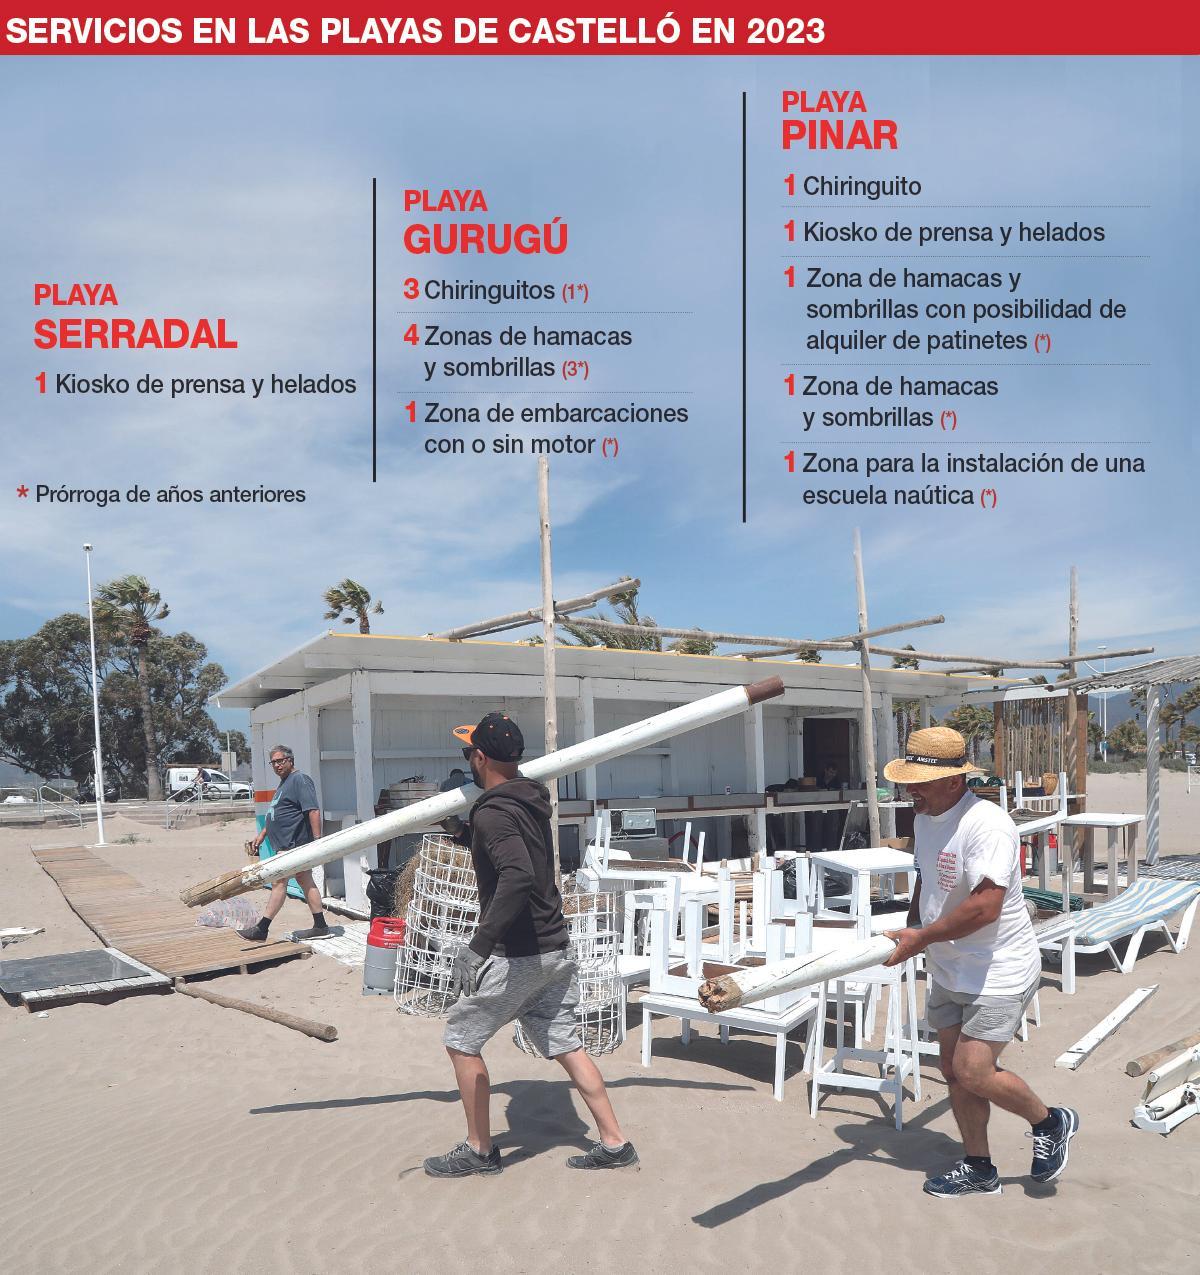 Los servicios que tendrán las playas de Castelló en 2023